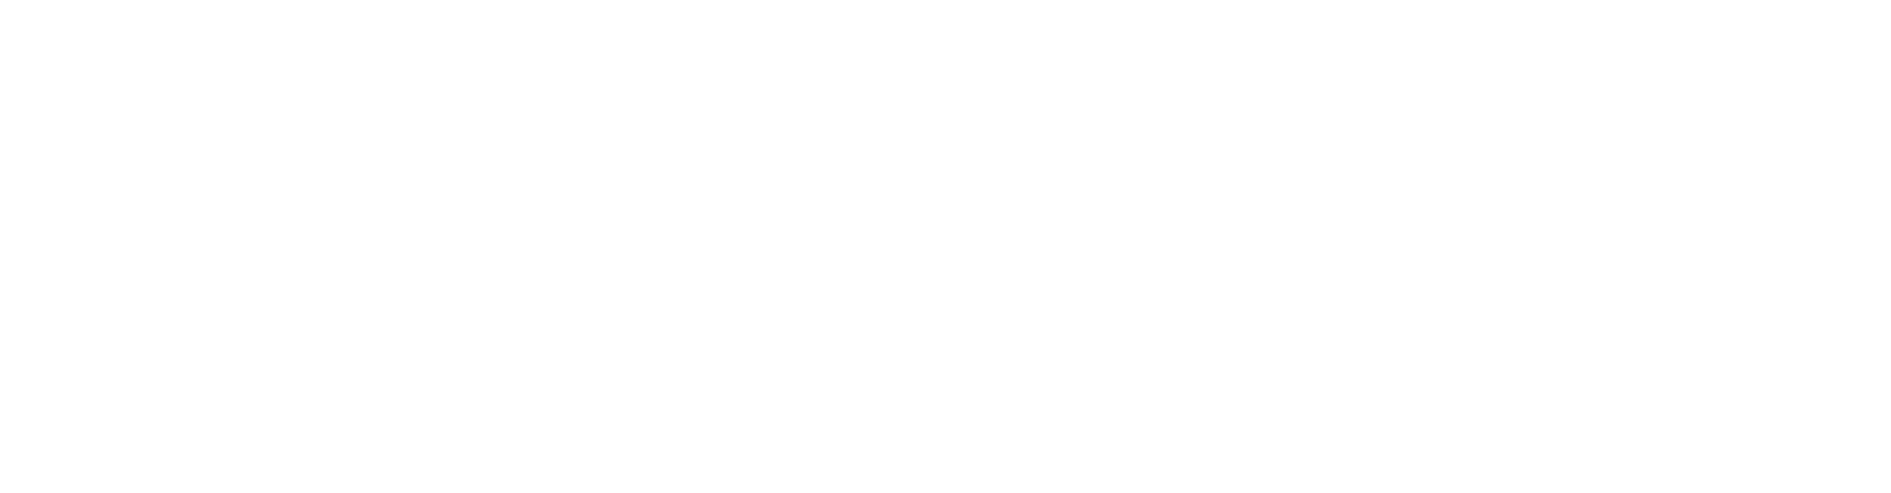 FA Design Award - Sponsor - Adobe